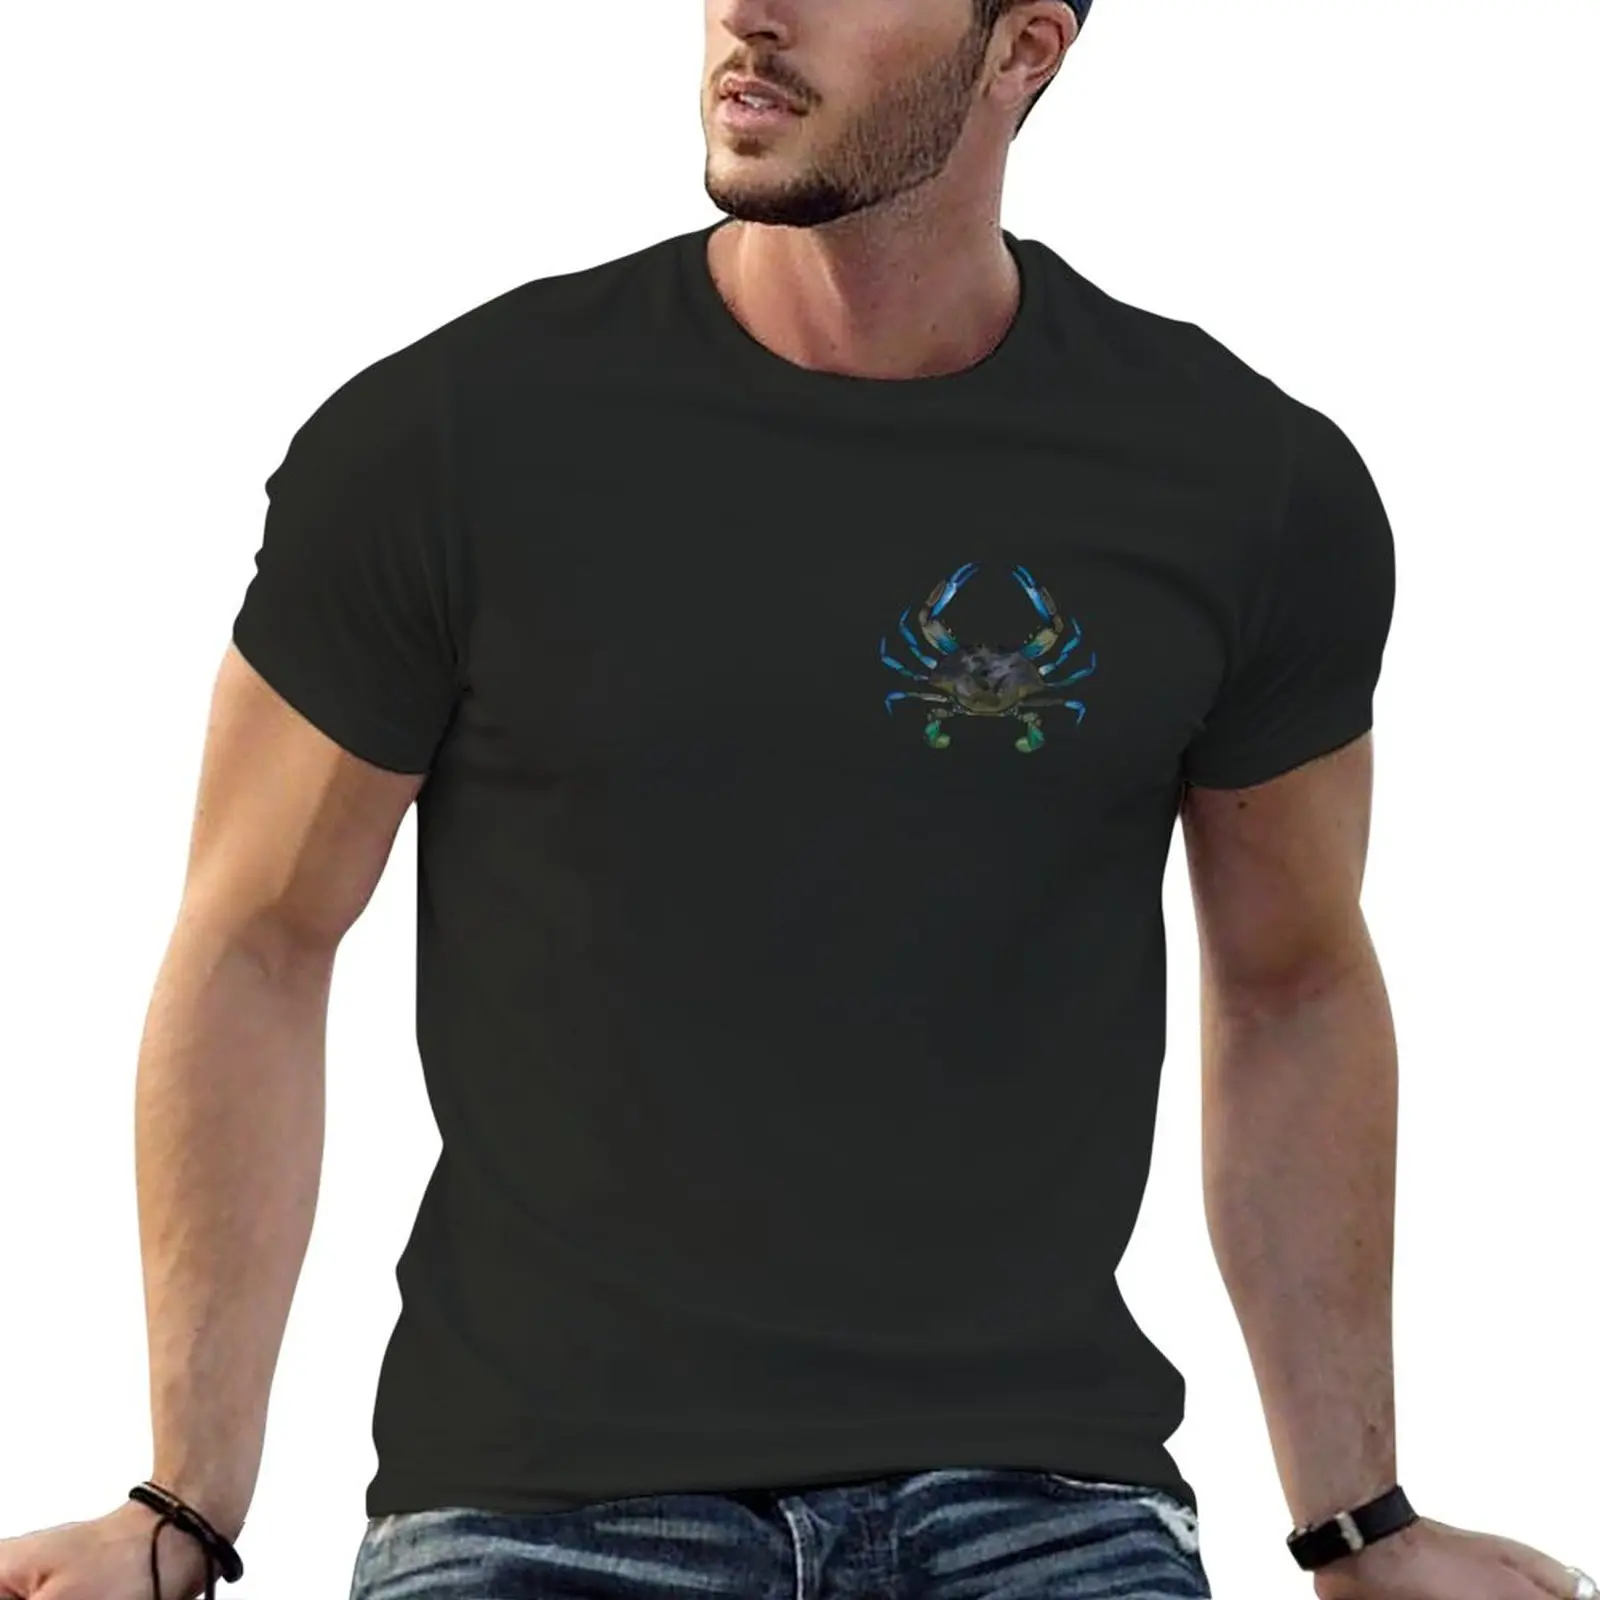 

New Blue Crab T-Shirt blank t shirts vintage t shirt Men's t shirts